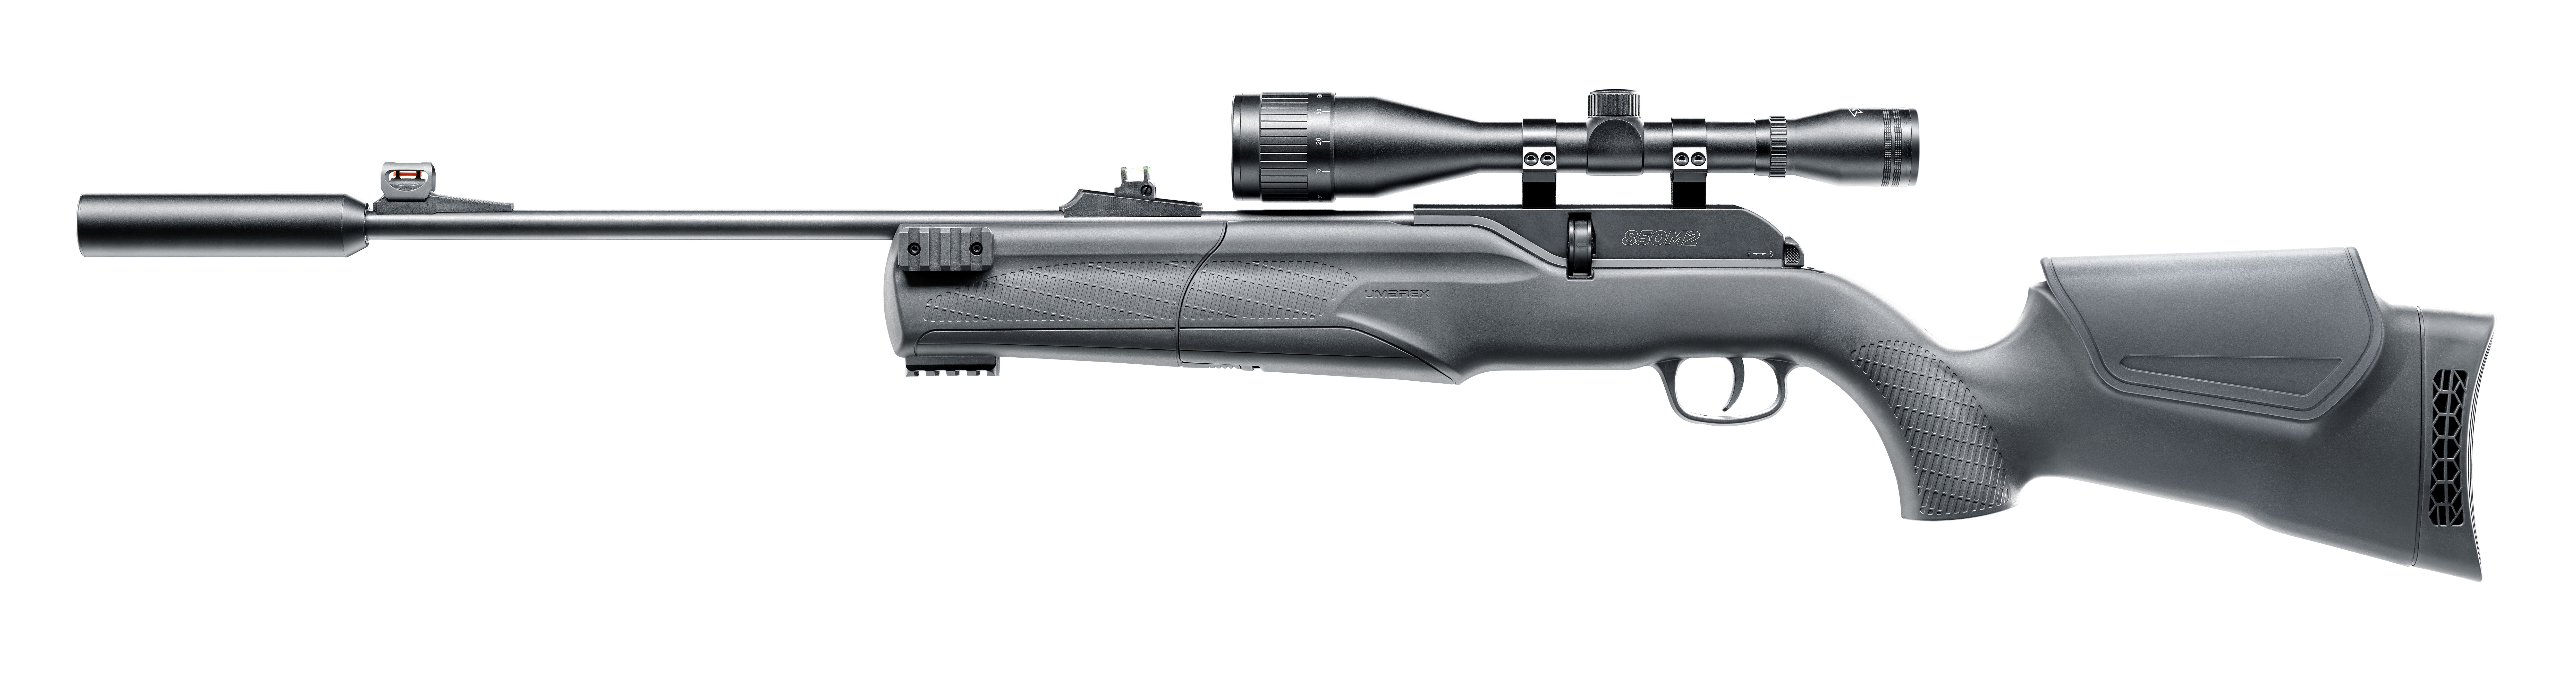 Umarex 850M2 Target Kit CO2-Gewehr in 4,5 mm (.177) Diabolo, Ansicht von links